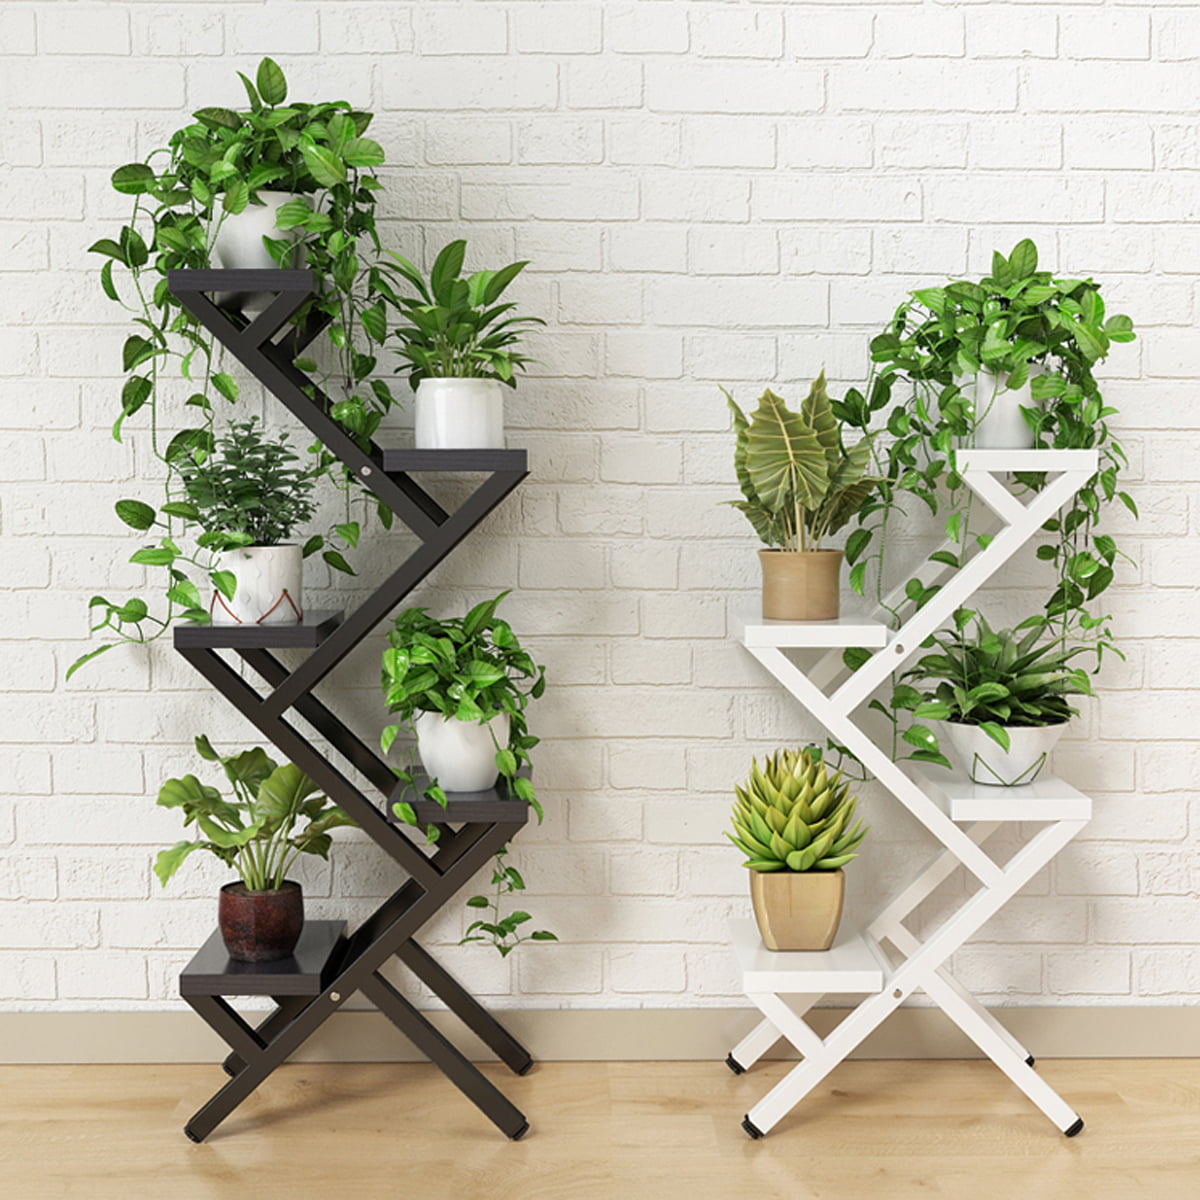 5 Tiers Metal Plant Stand Flower Rack Outdoor Indoor Wood Shelf Garden Display 